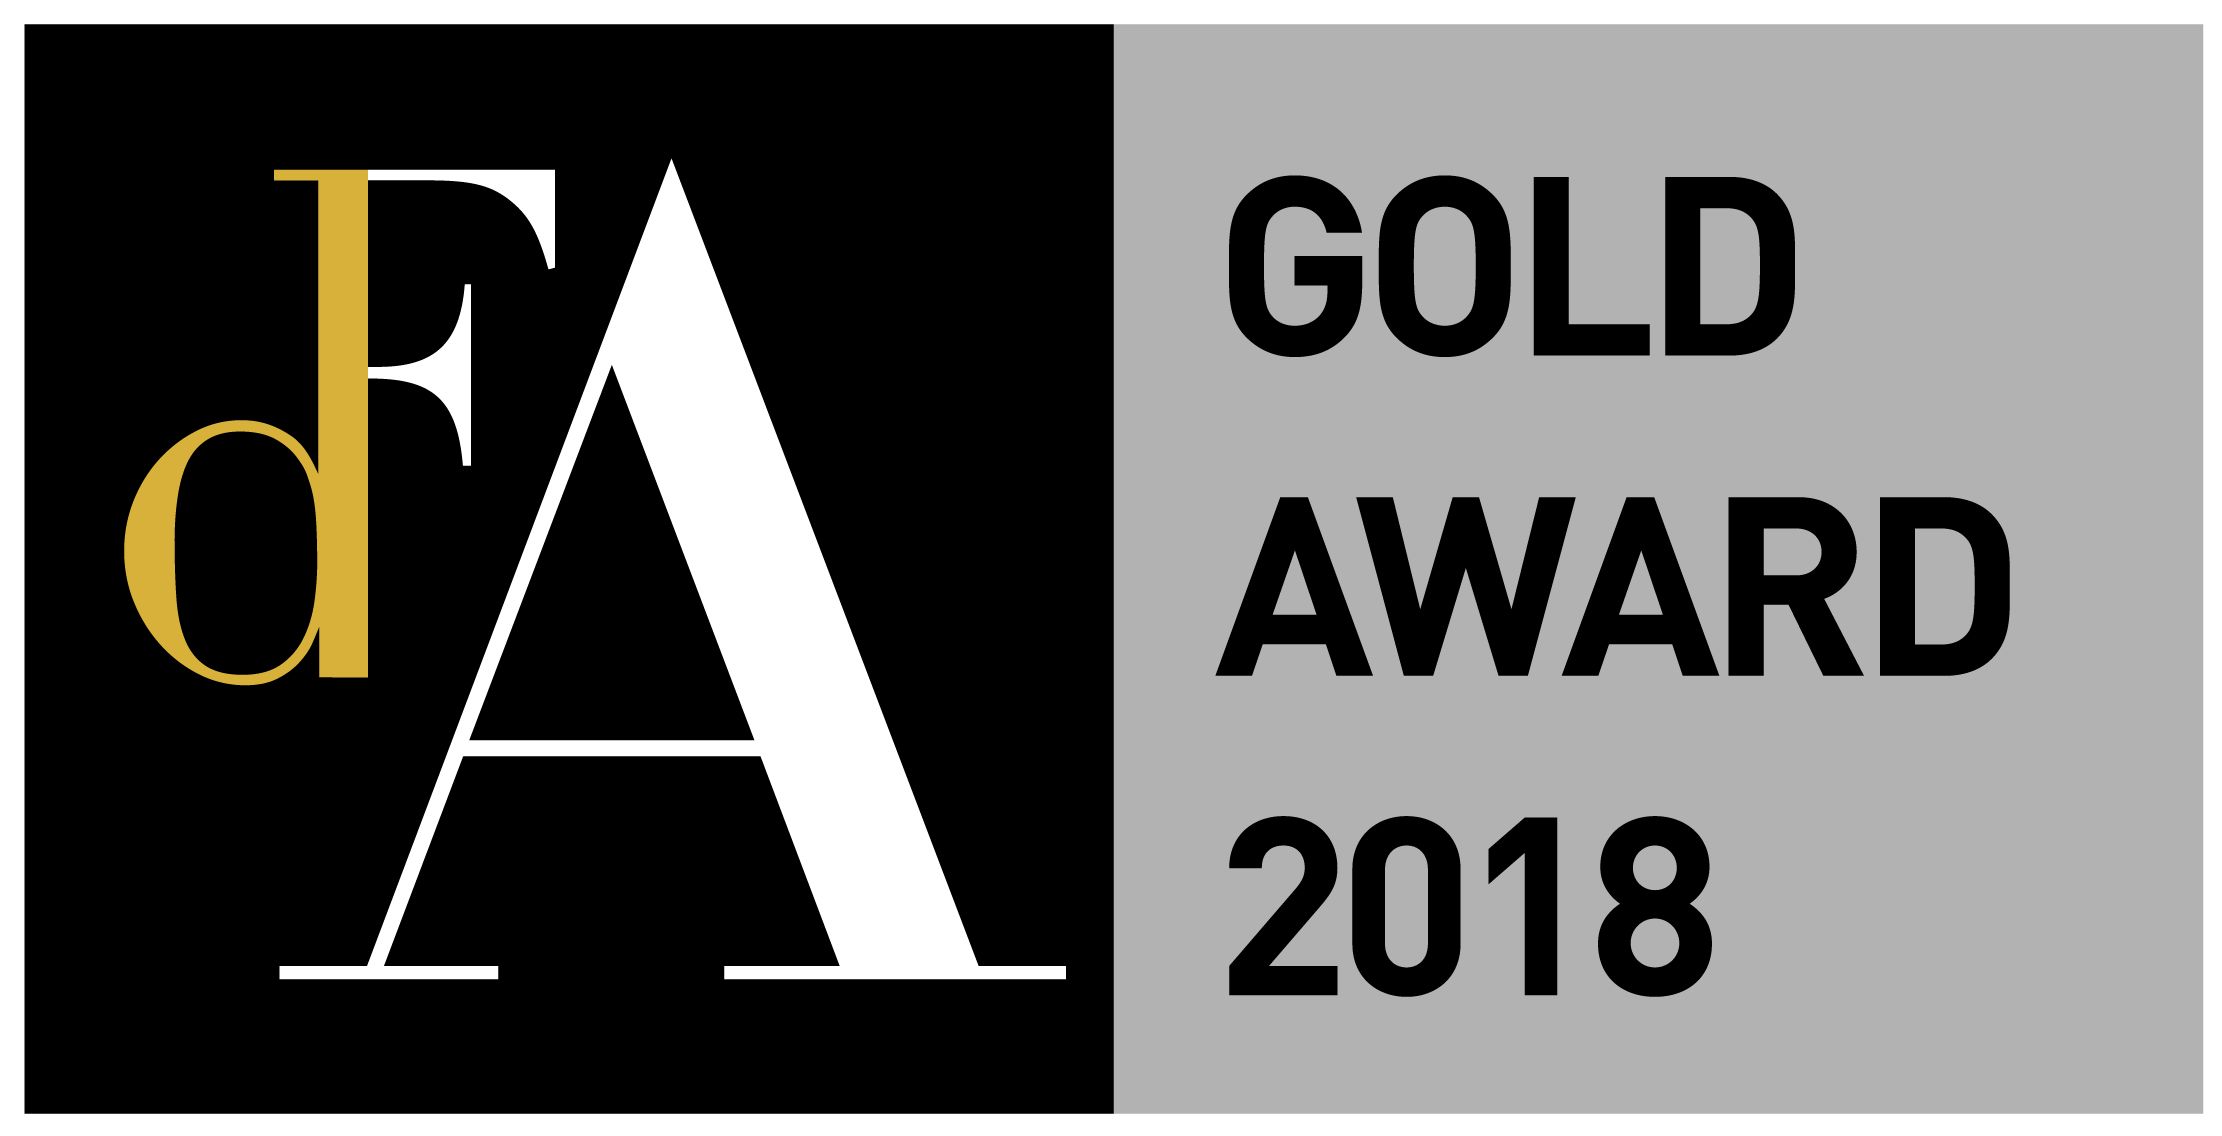 DFA Design for Asia Awards 2018 - Gold Award